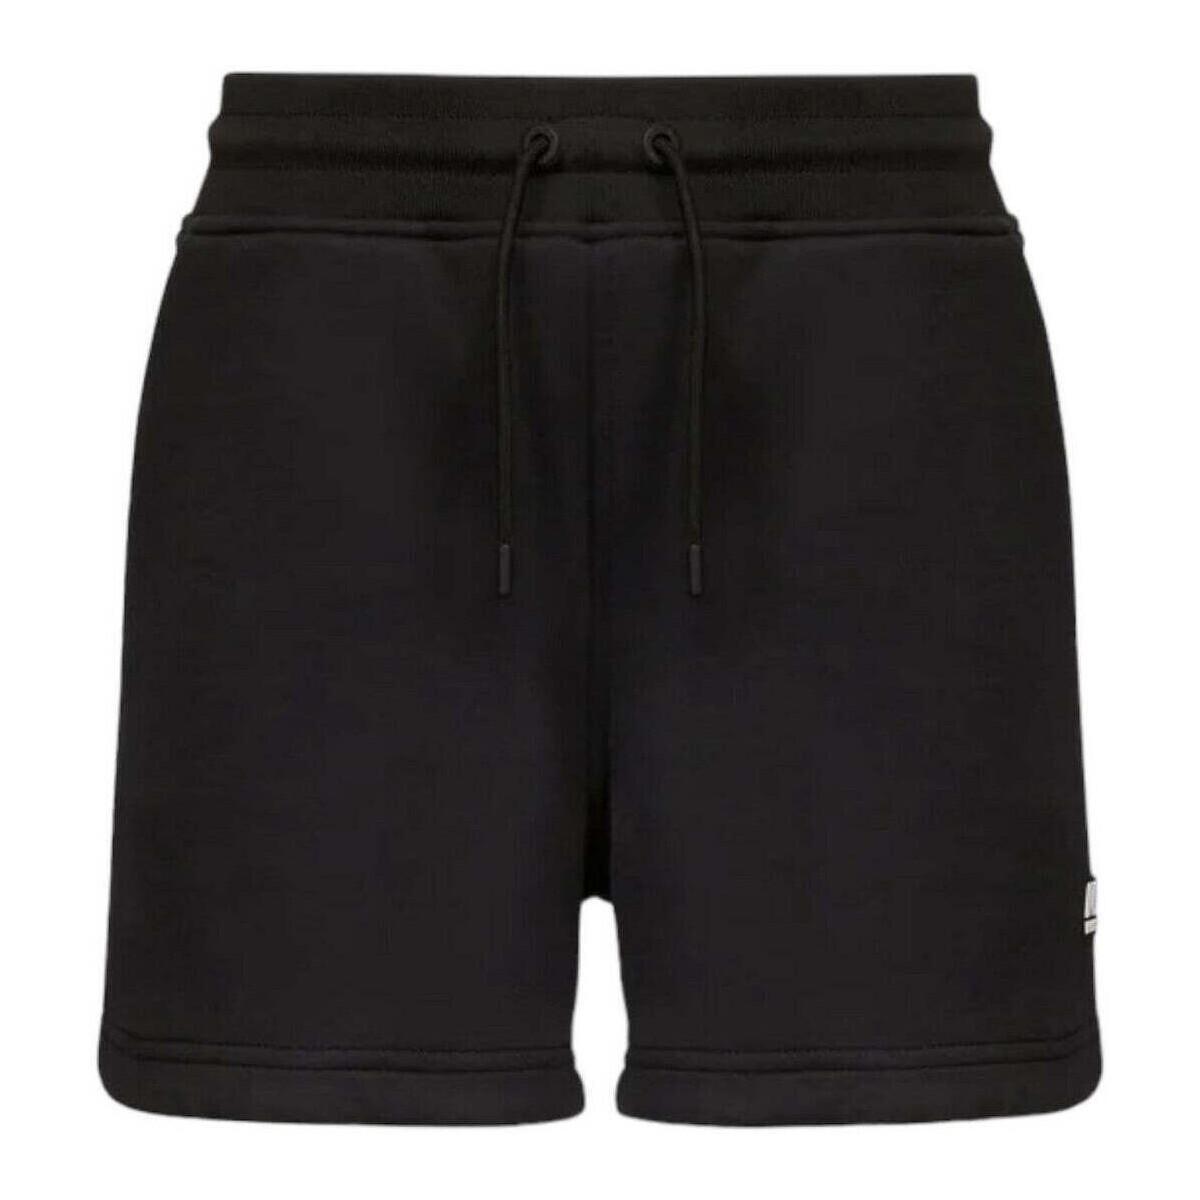 Kleidung Damen Shorts / Bermudas K-Way  Schwarz